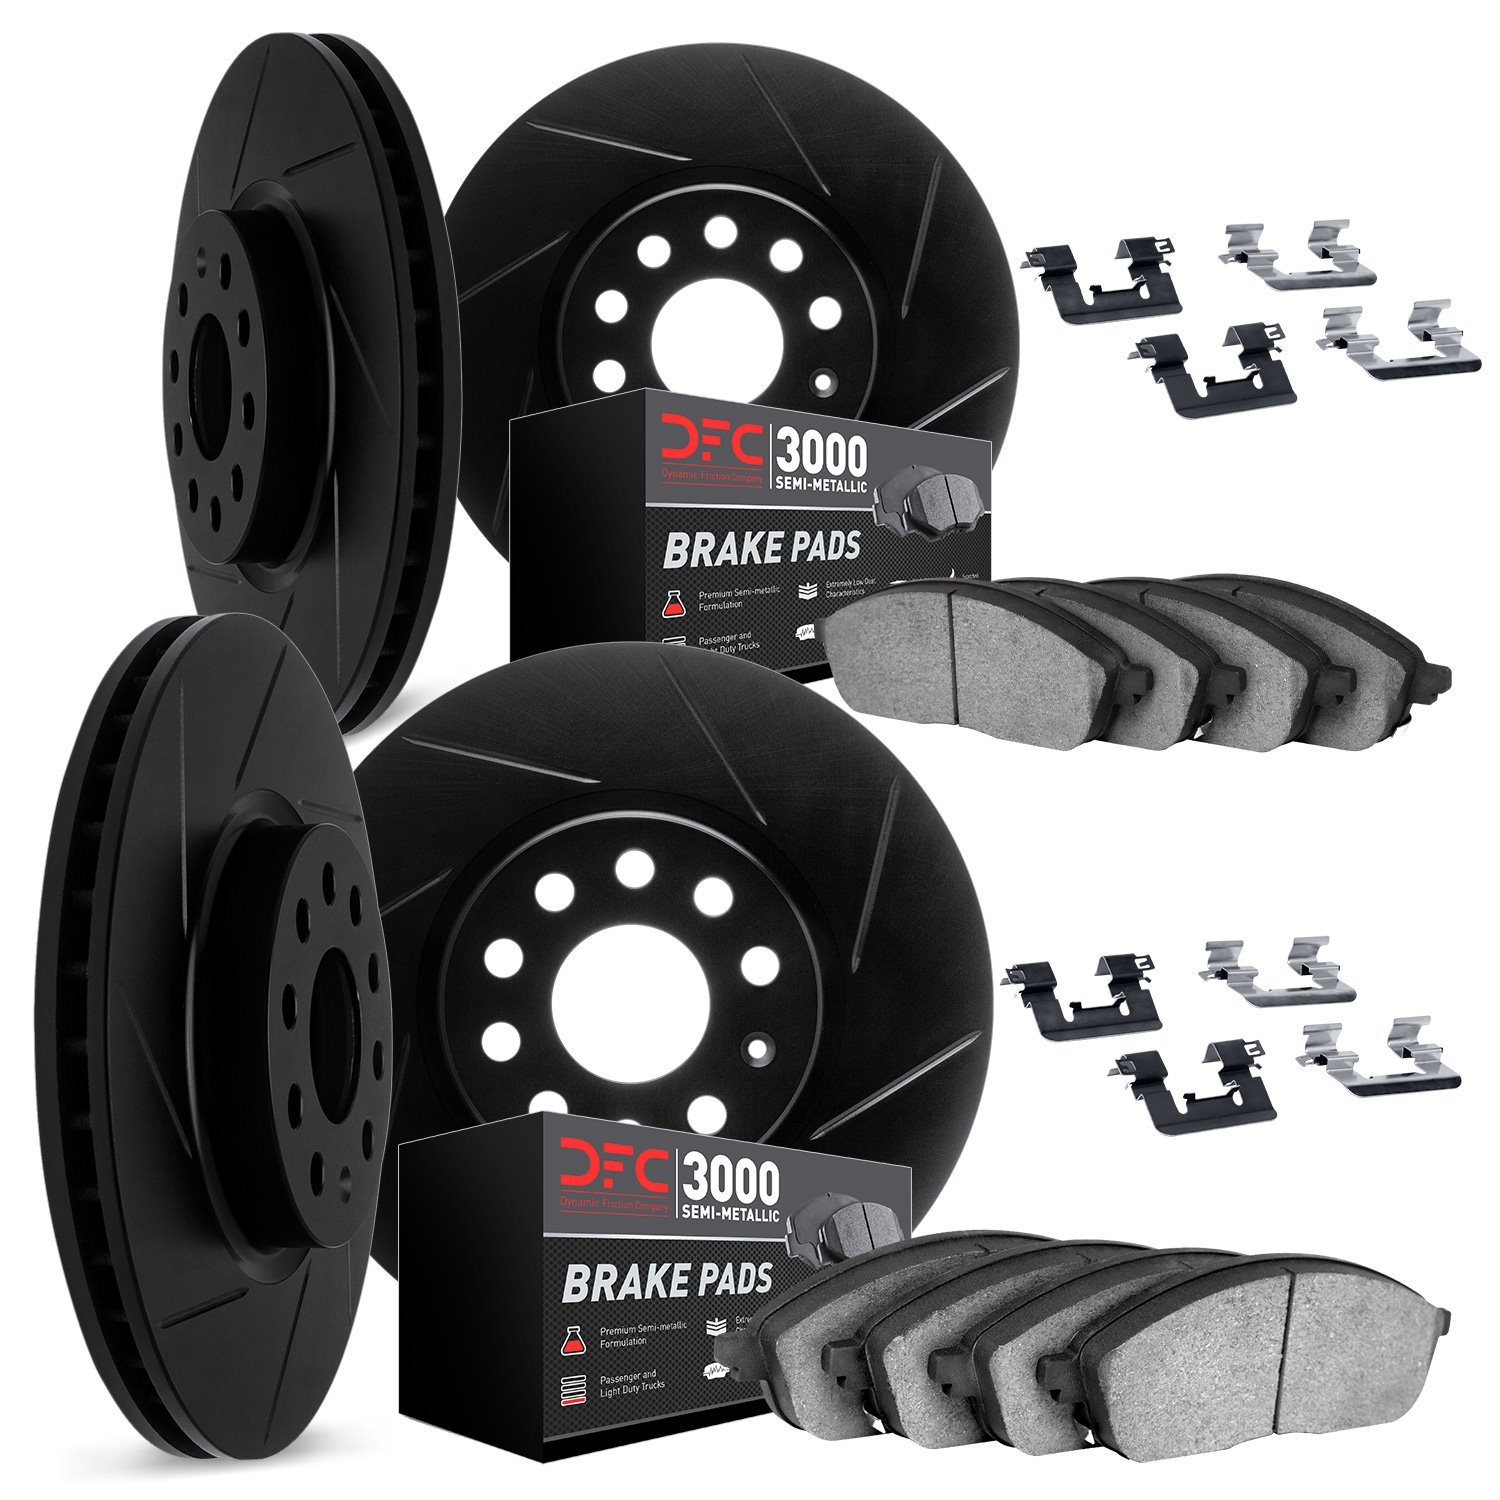 3114-63132 Slotted Brake Rotors with 3000-Series Semi-Metallic Brake Pads Kit & Hardware [Black], 2013-2019 Mercedes-Benz, Posit